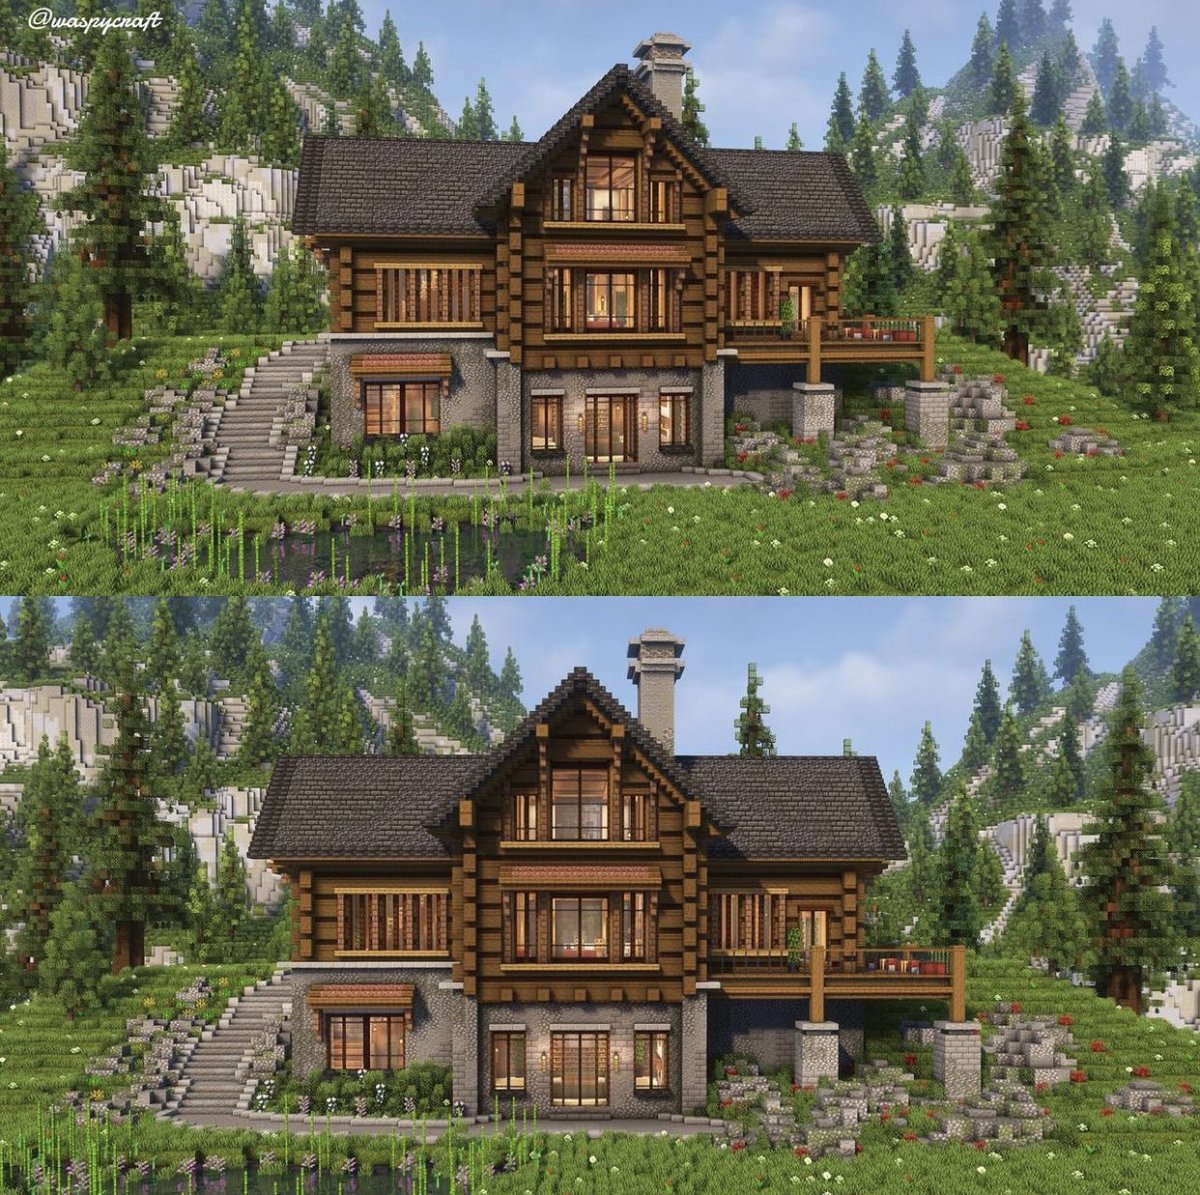 Alpine haven built by @waspycraft @paintergigi @Airtugmc #minecraft建築コミュ #MinecraftServer #minecraftbuilds #Minecraft